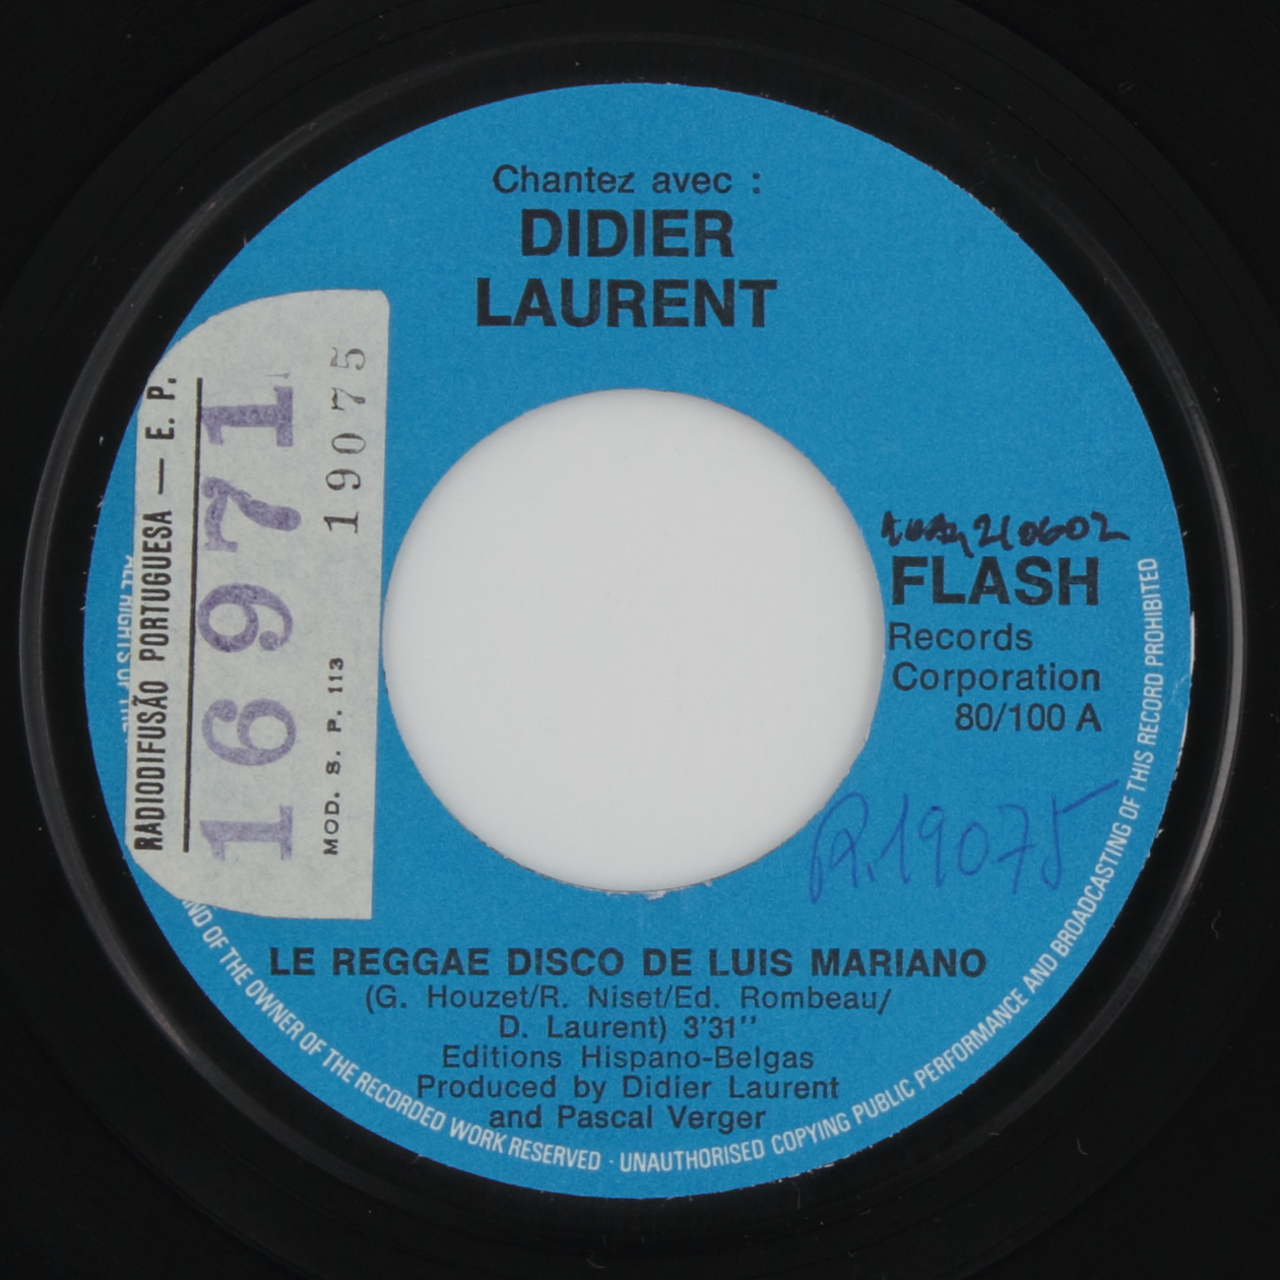 Le reggae disco de Luis Mariano